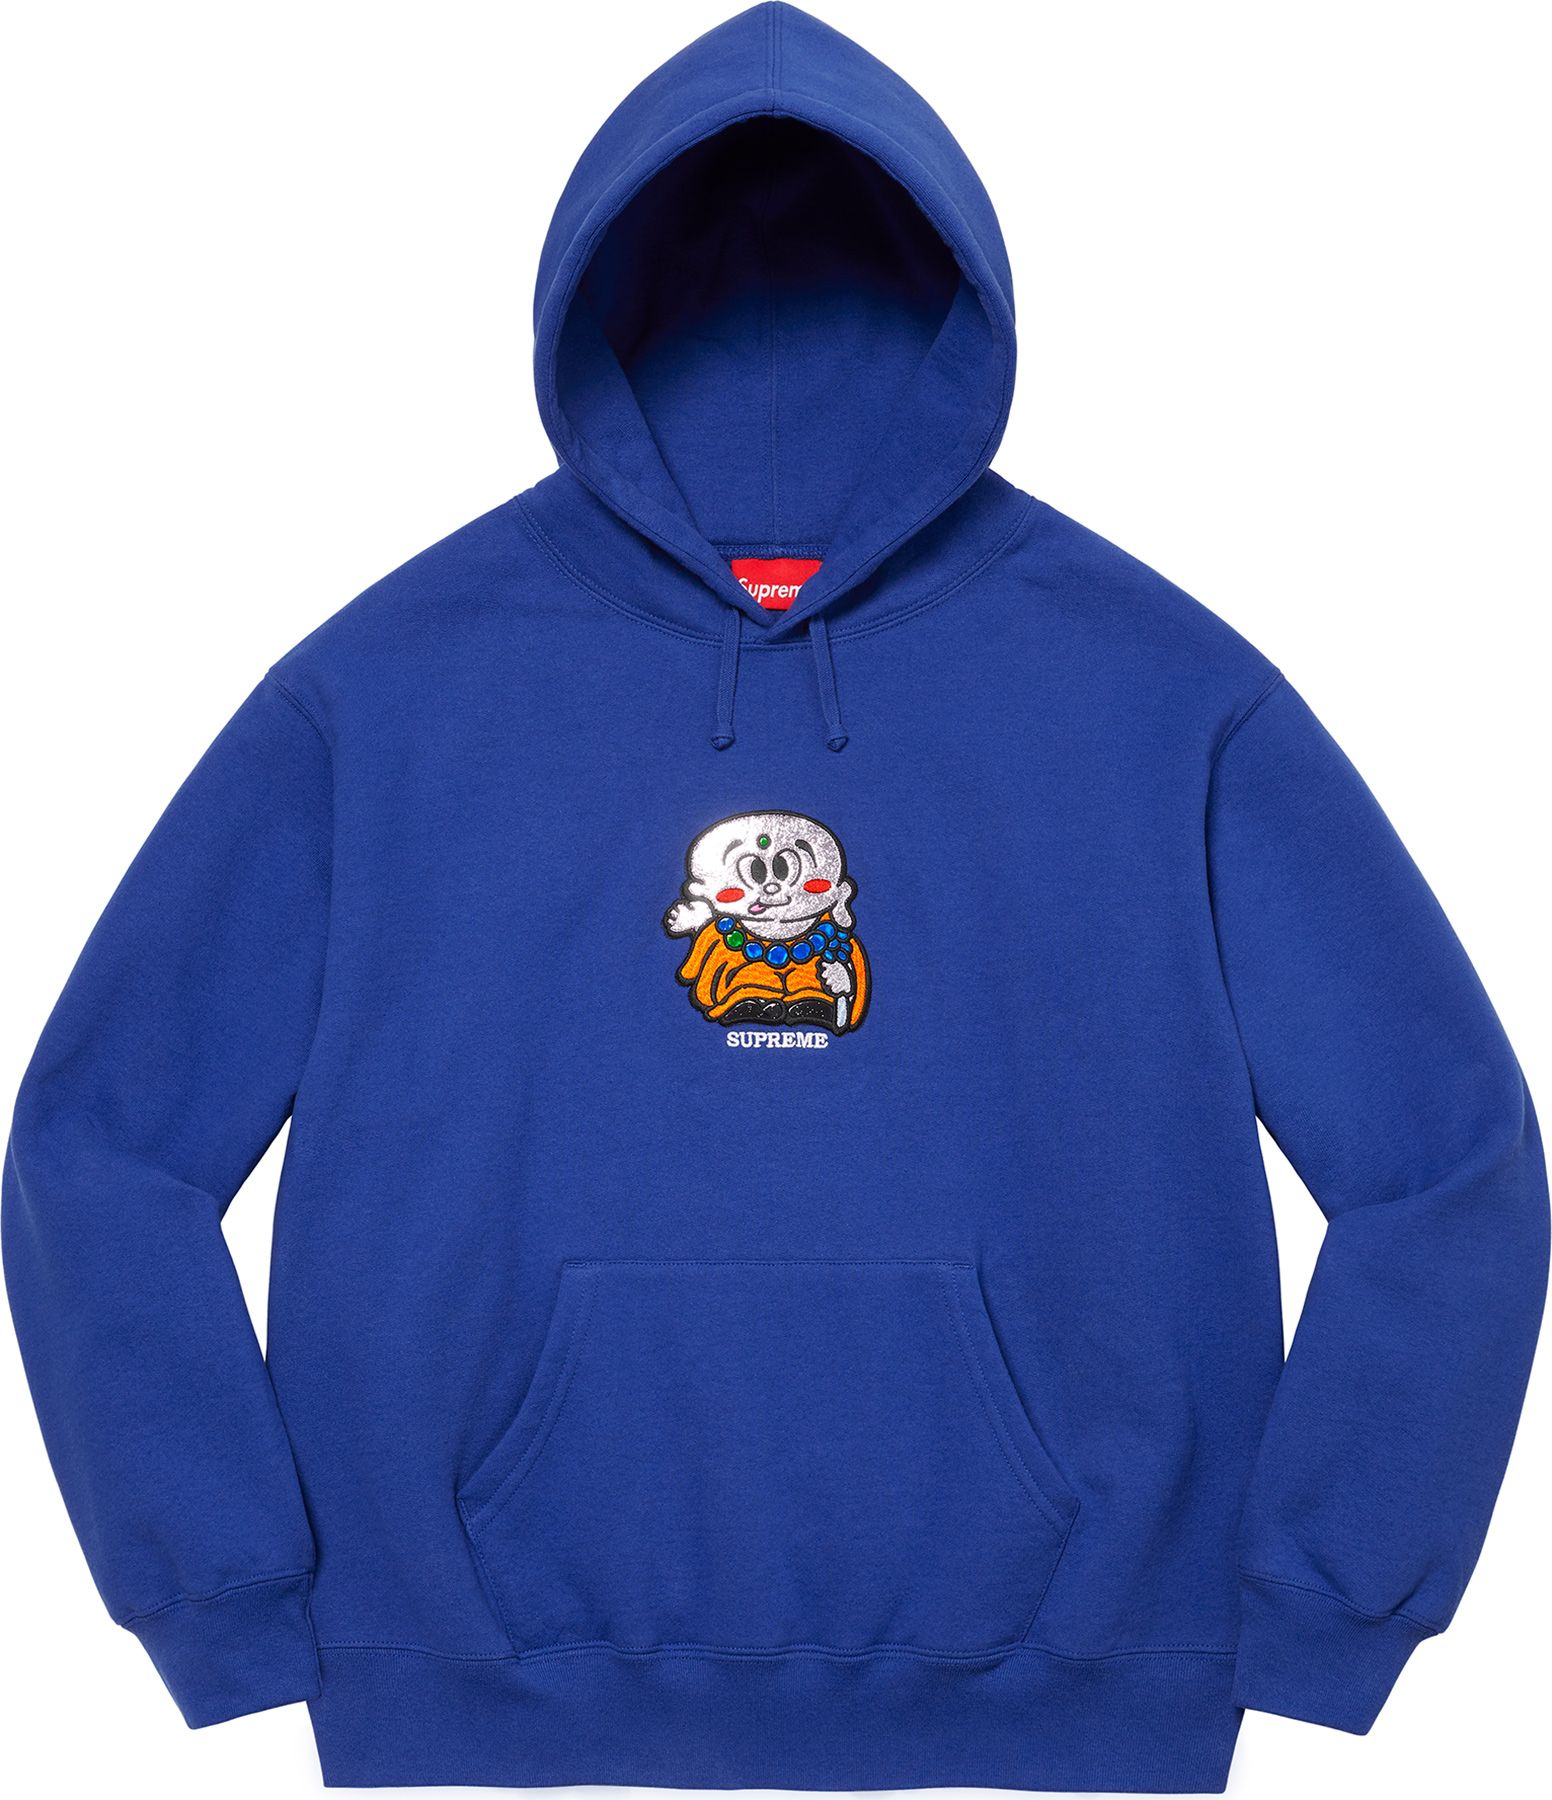 Supreme Worldwide Hooded Sweatshirt - トップス